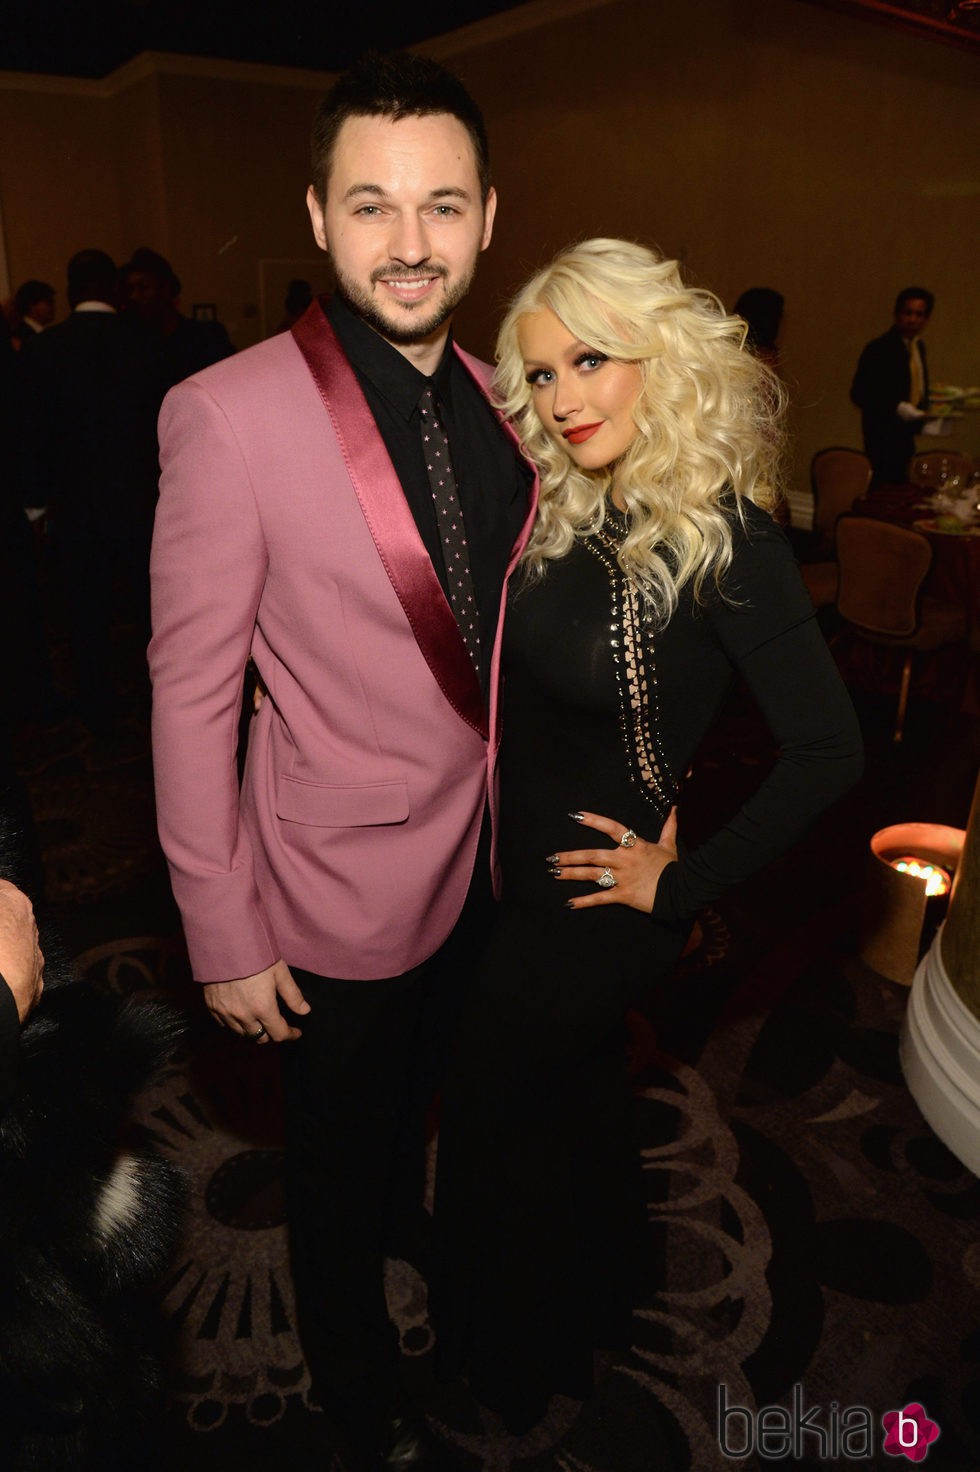 Christina Aguilera y Matthew Rutler en la fiesta Clive Davis previa a los Grammy 2016